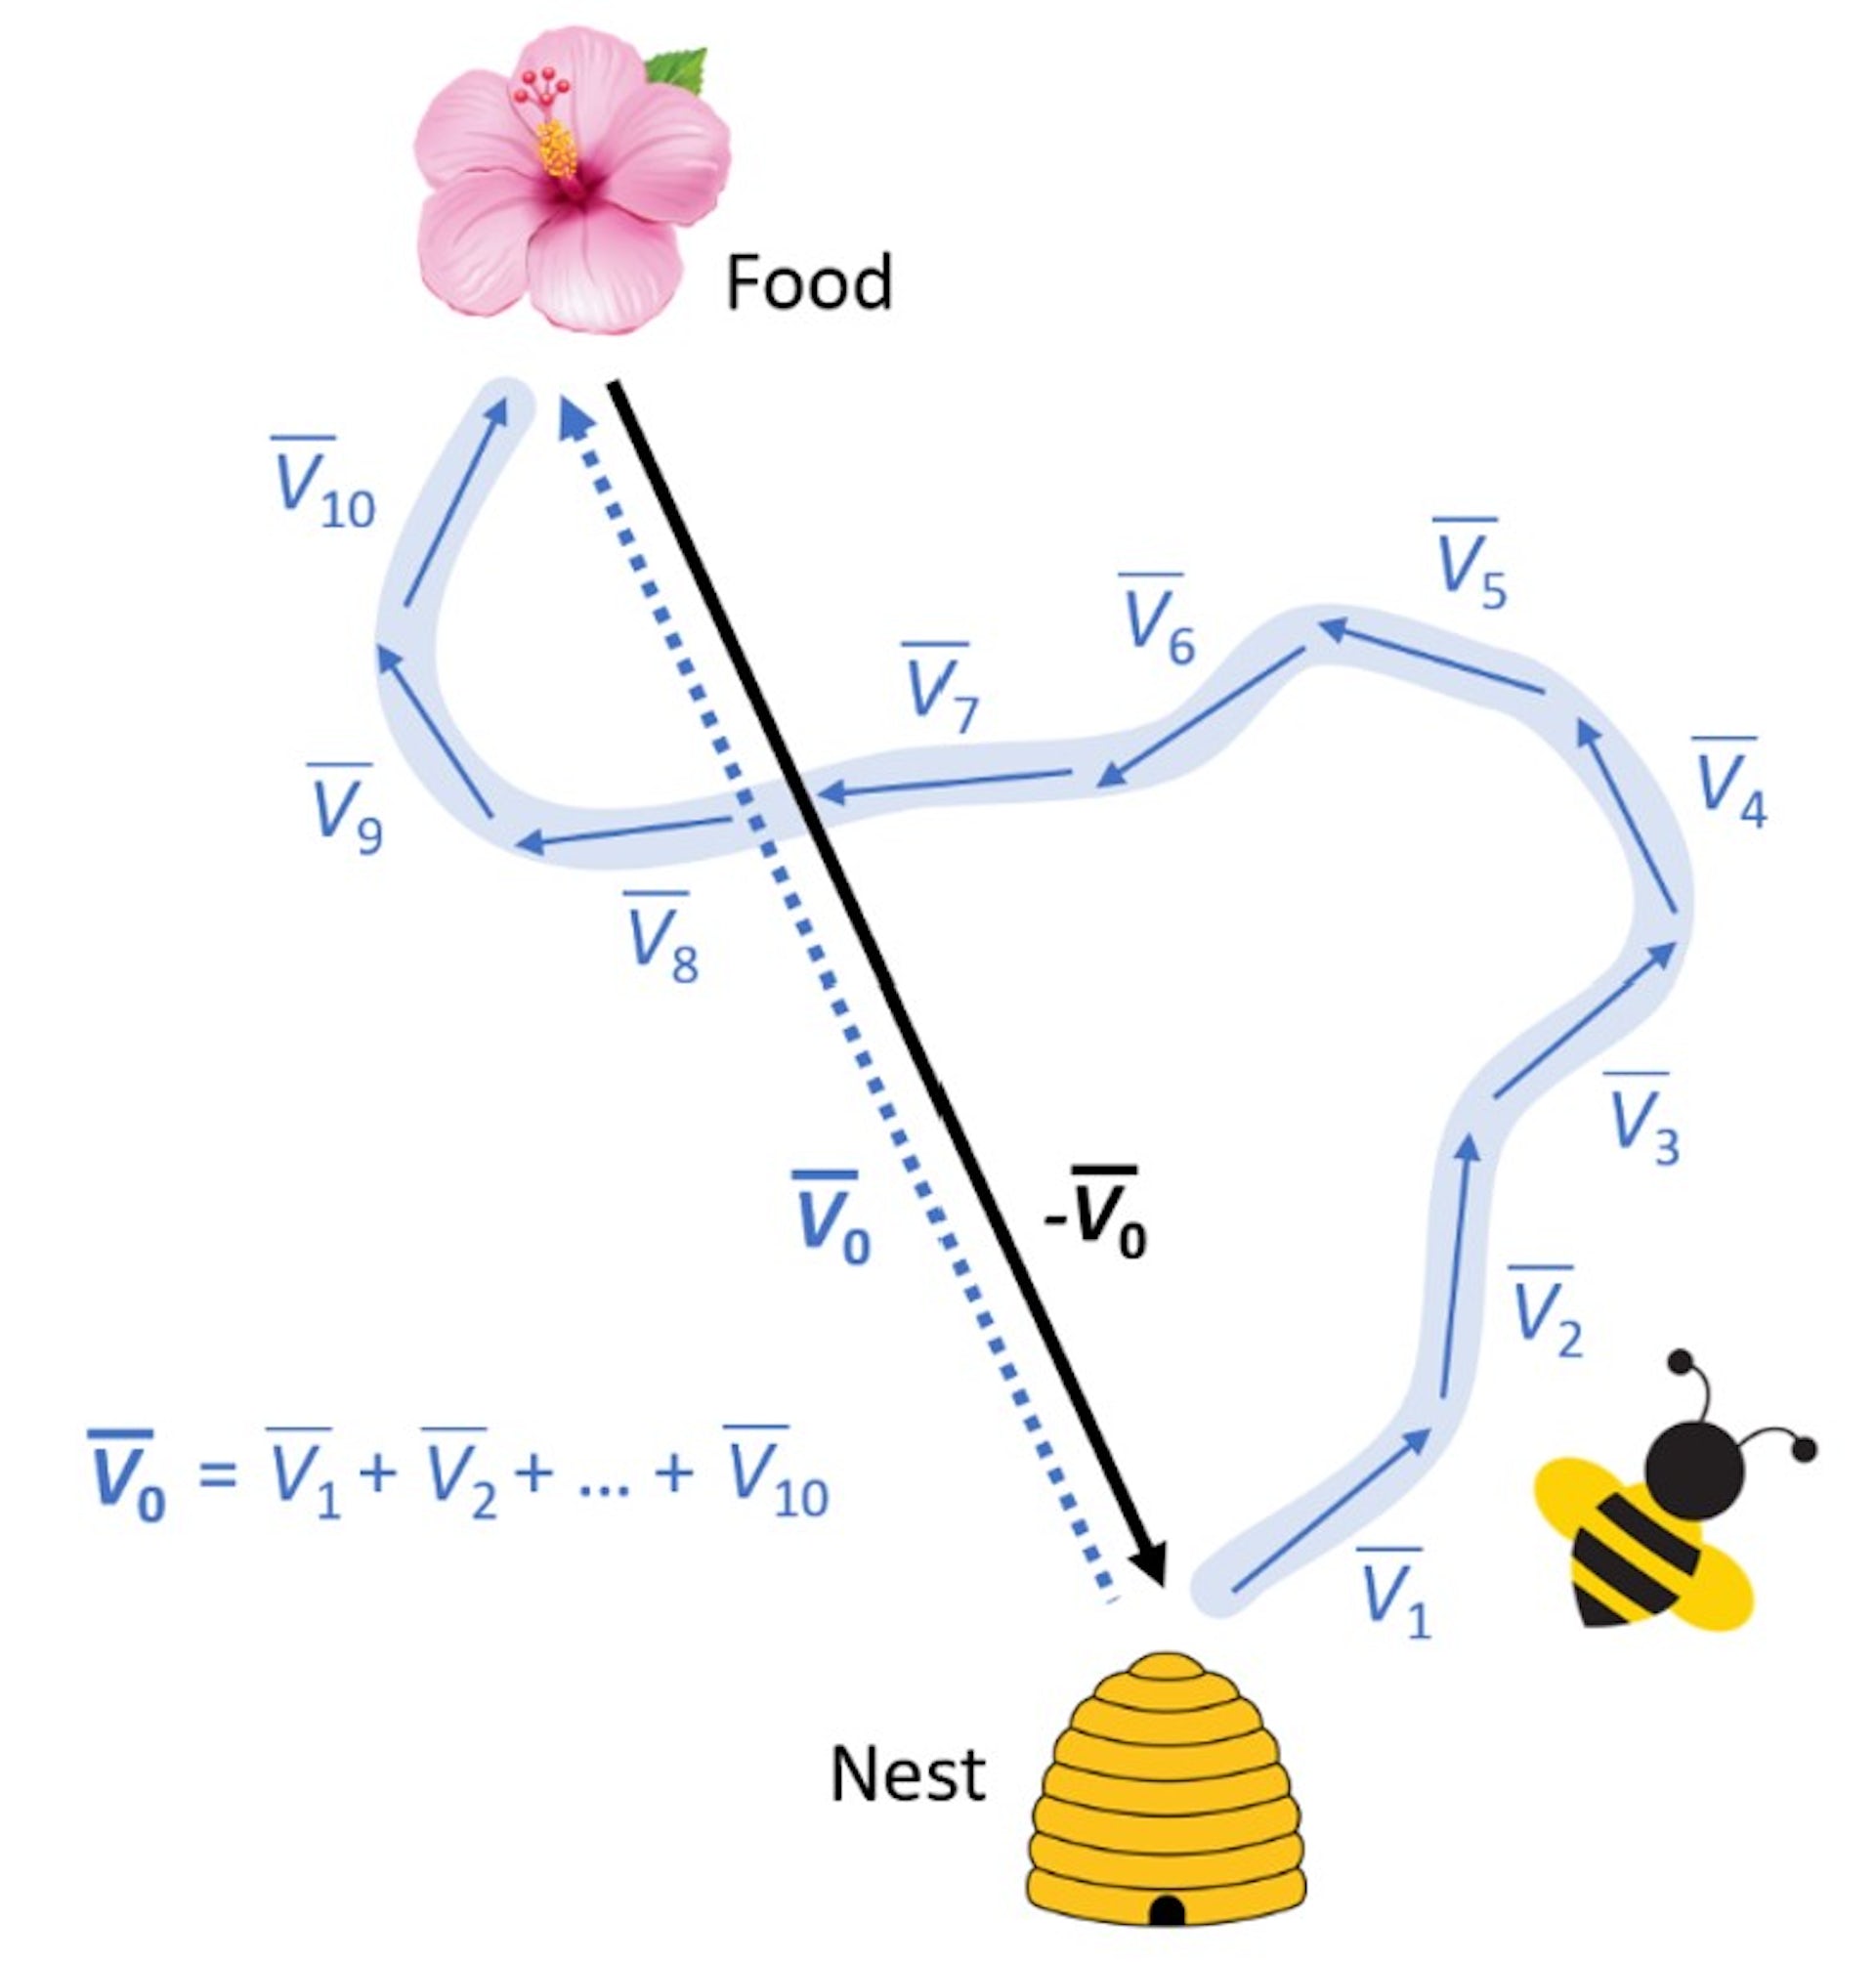 Bir arının zikzak uçuşunu ve doğrudan eve giden rotayı gösteren bir grafik.